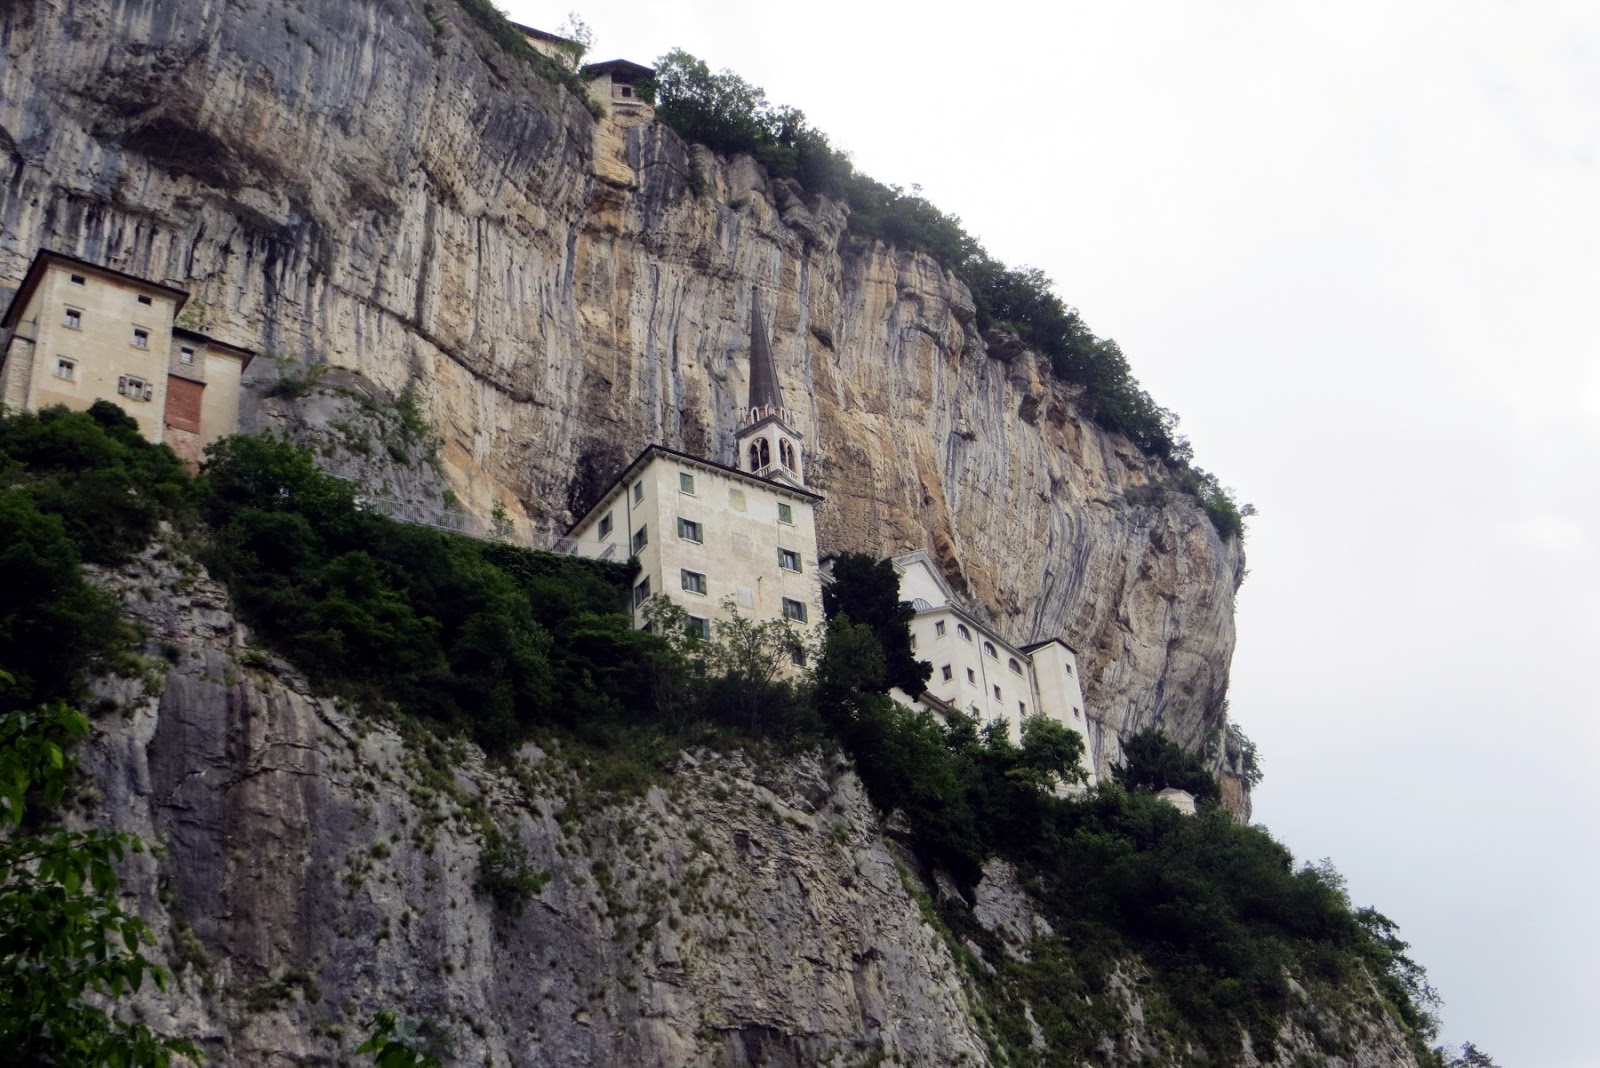 Tòa nhà cổ kính nằm cheo leo trên vách núi cao gần 800 mét ở châu Âu - 4